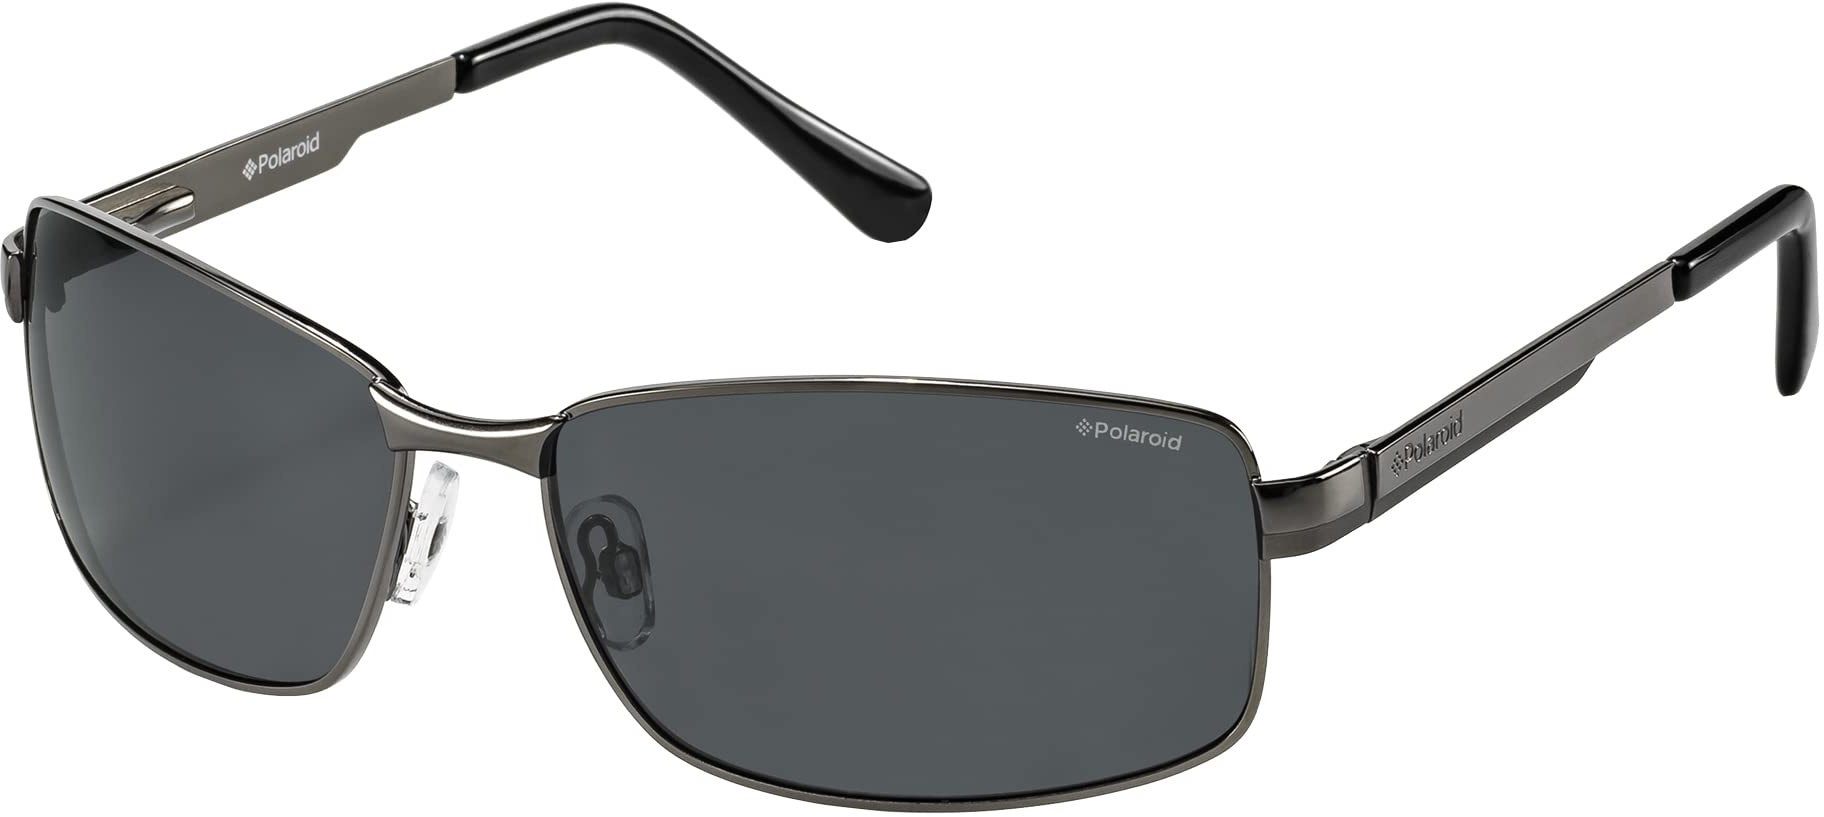 Polaroid Sunglasses P4416